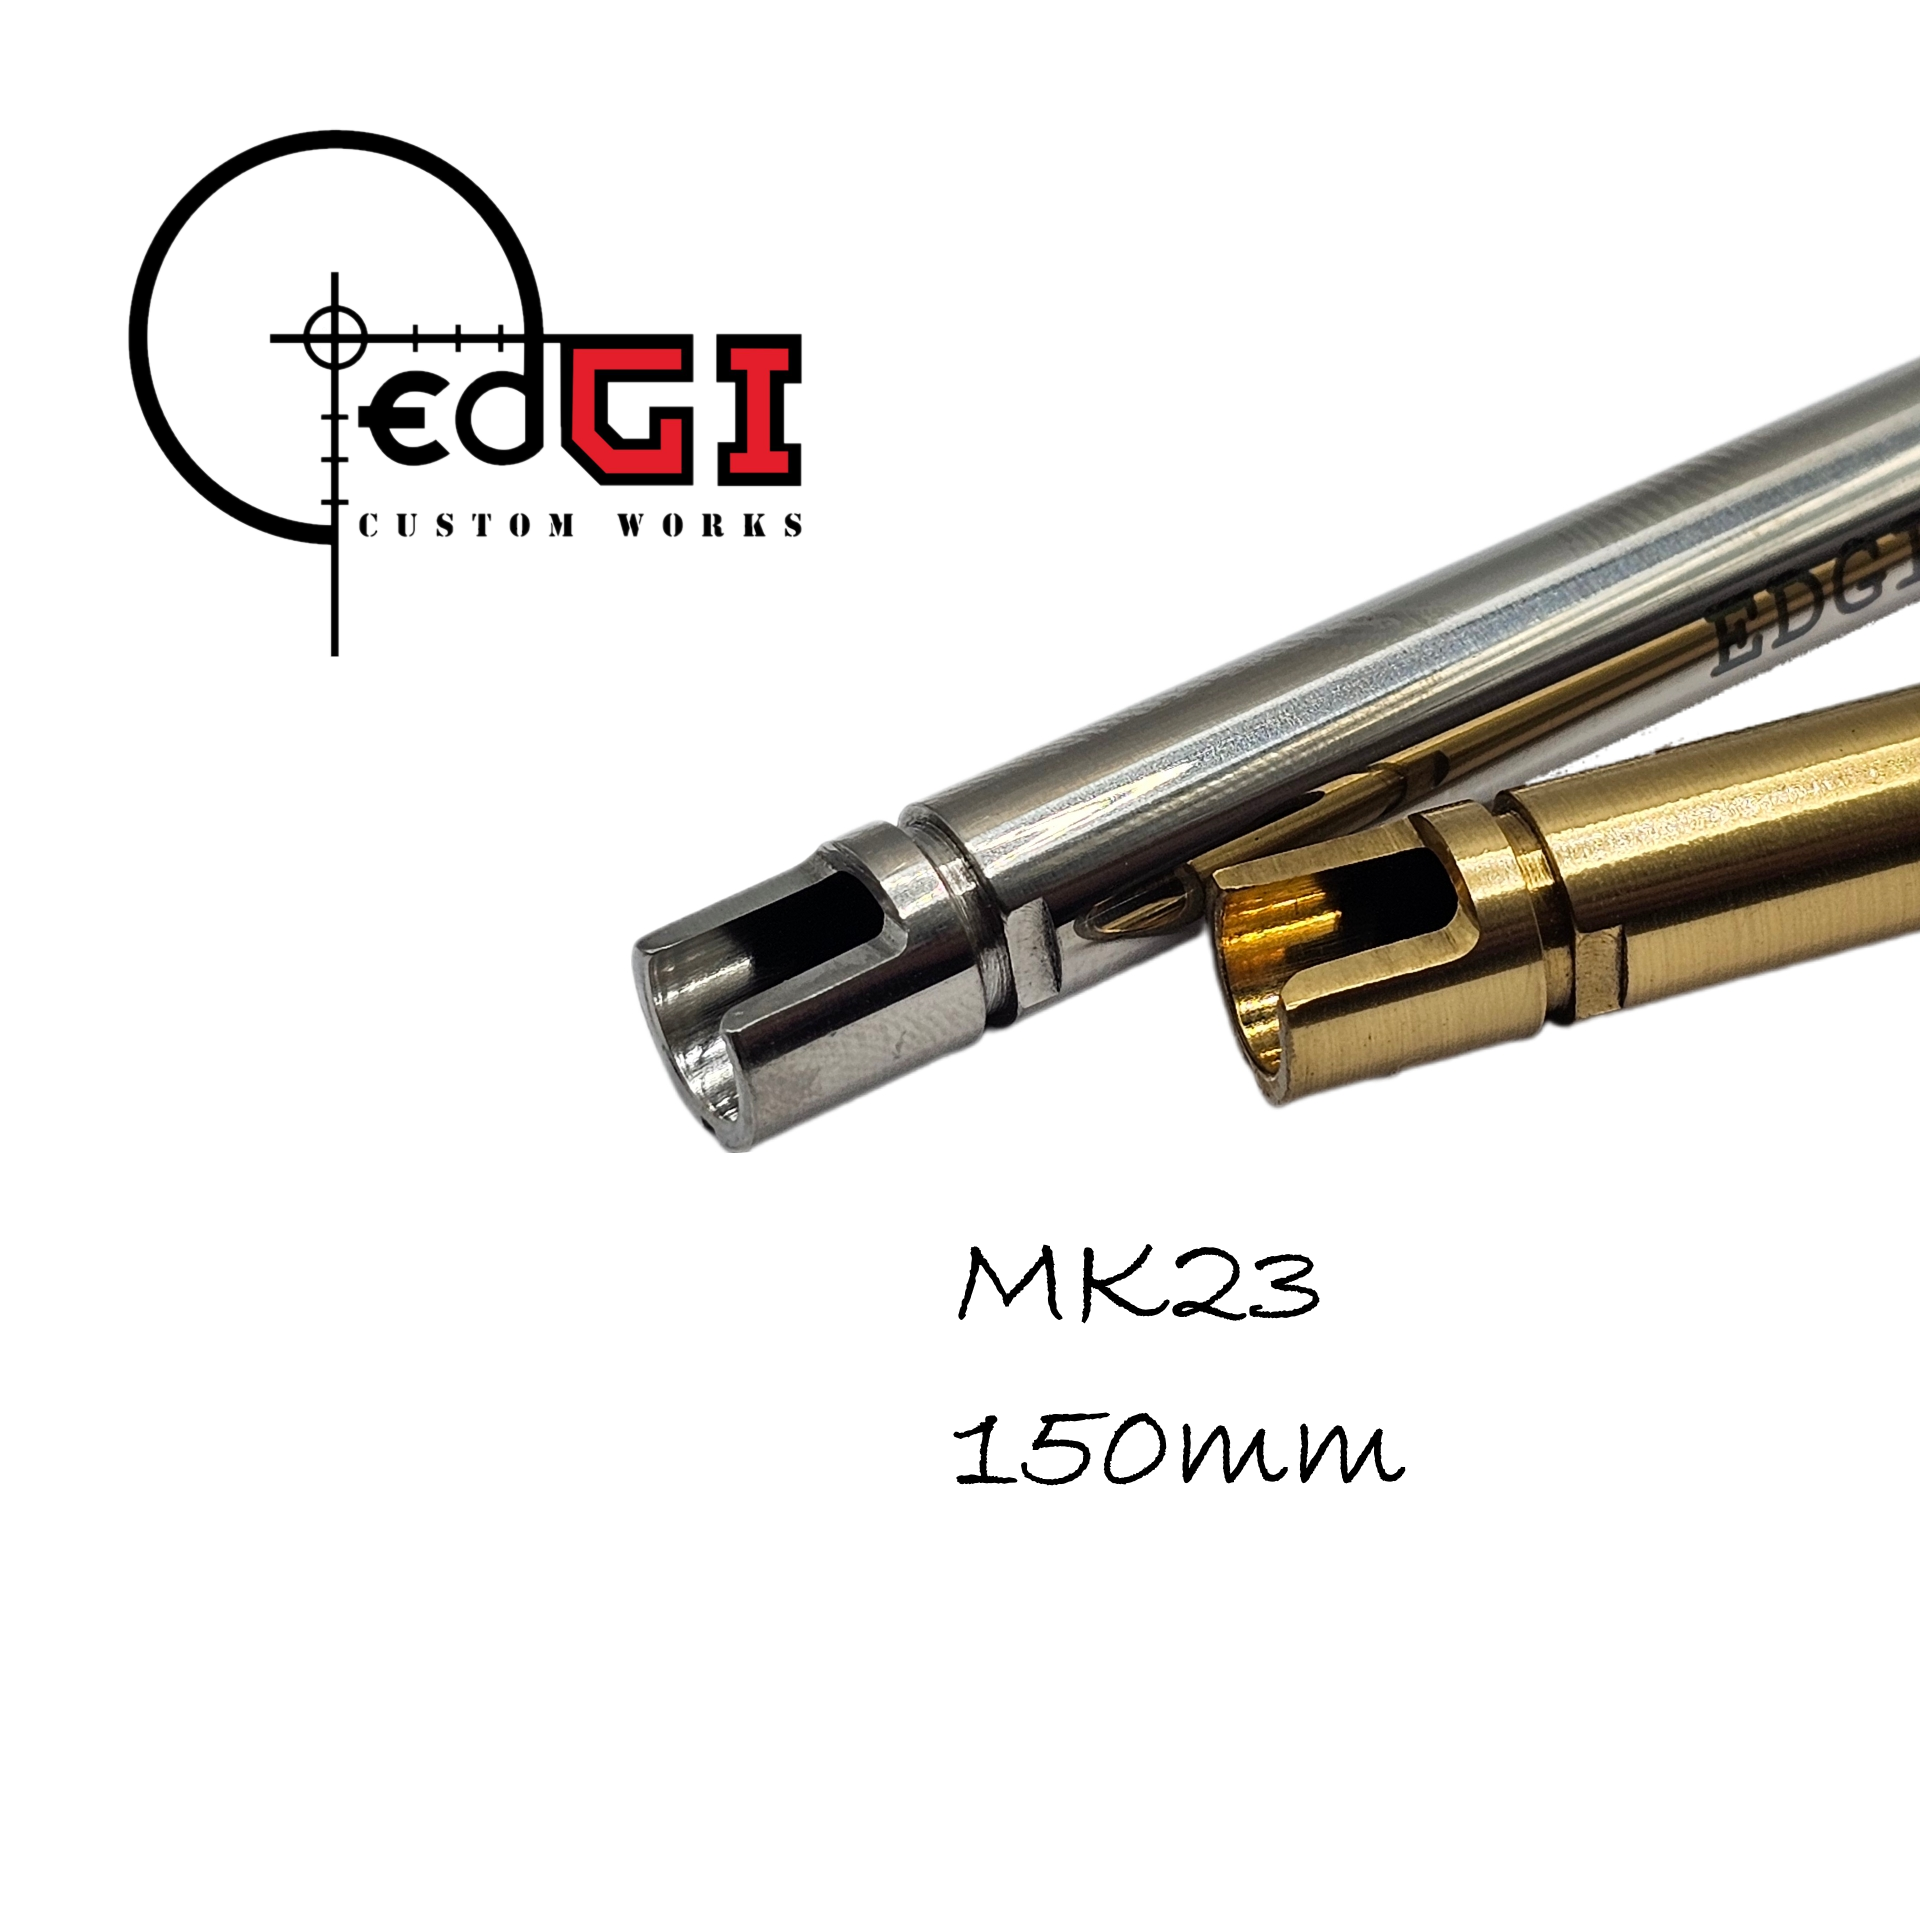 Edgi Custom Works - 150mm VSR Inner Barrel - MK23